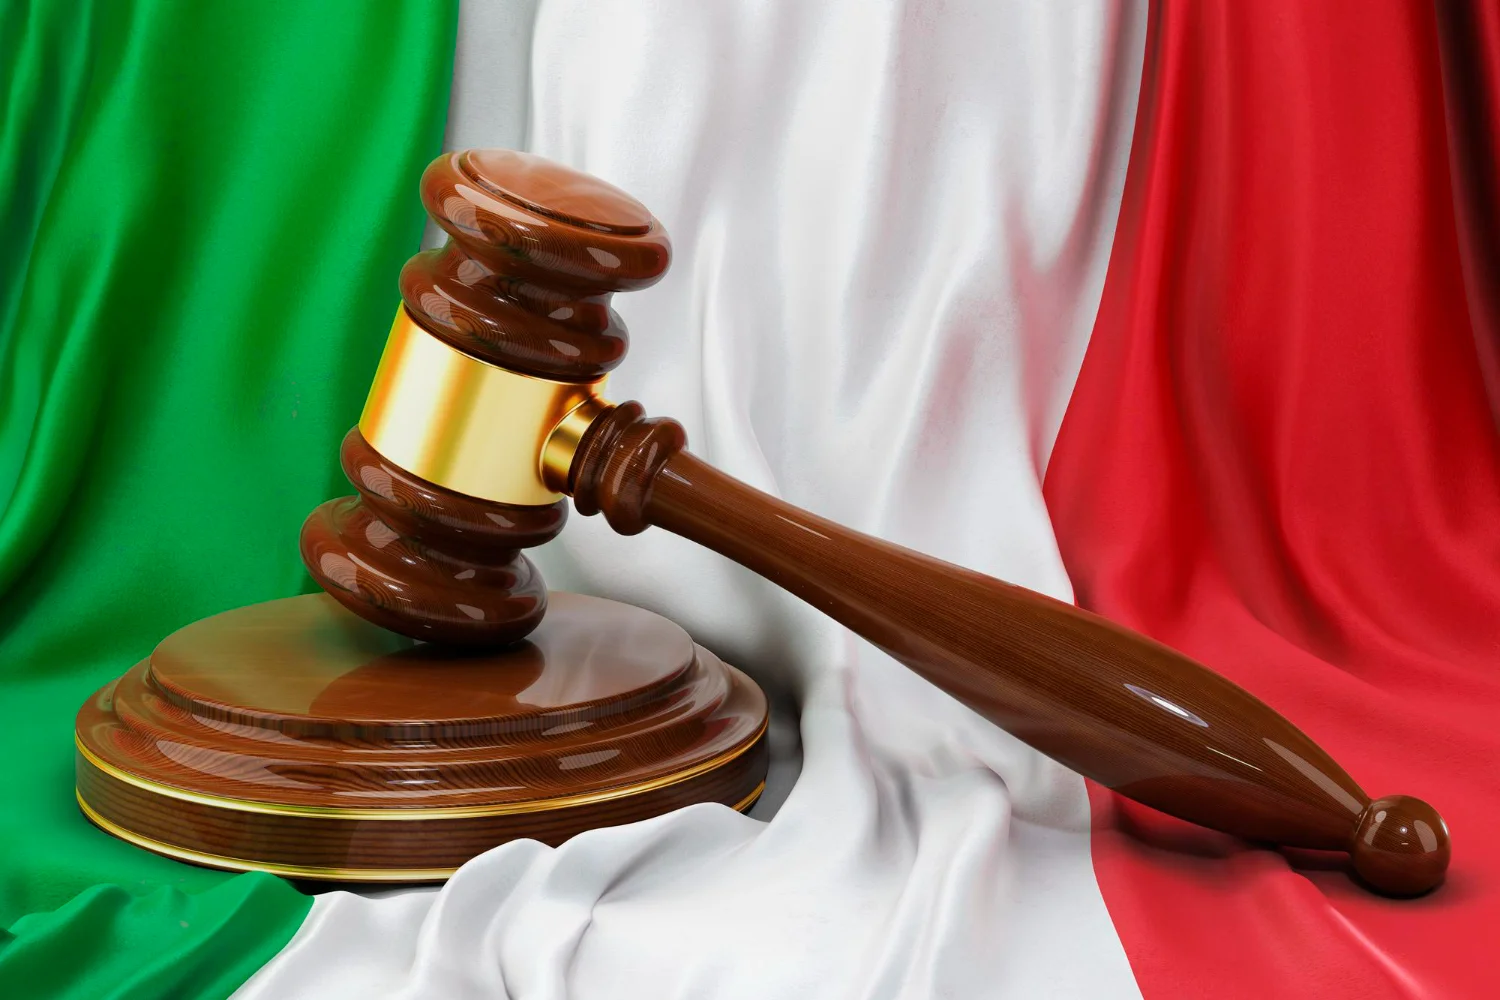 Imagem de bandeira da Itália com martelo que representa cidadania italiana via judicial